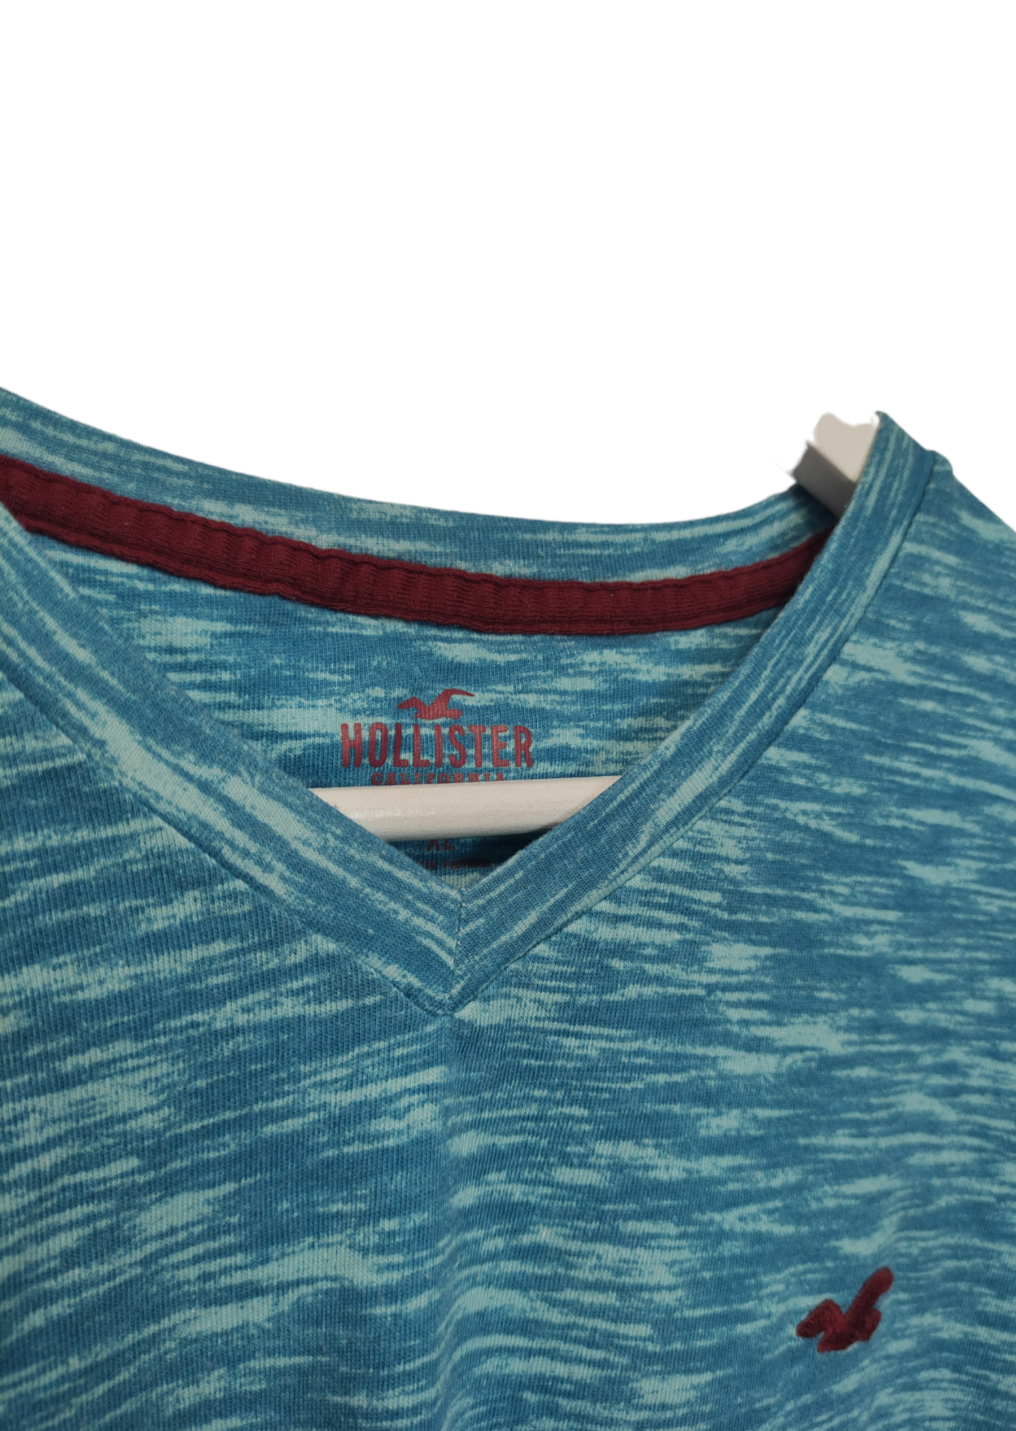 Ανδρική Μπλούζα - T- Shirt HOLLISTER  σε Γαλάζιο Χρώμα (XL)